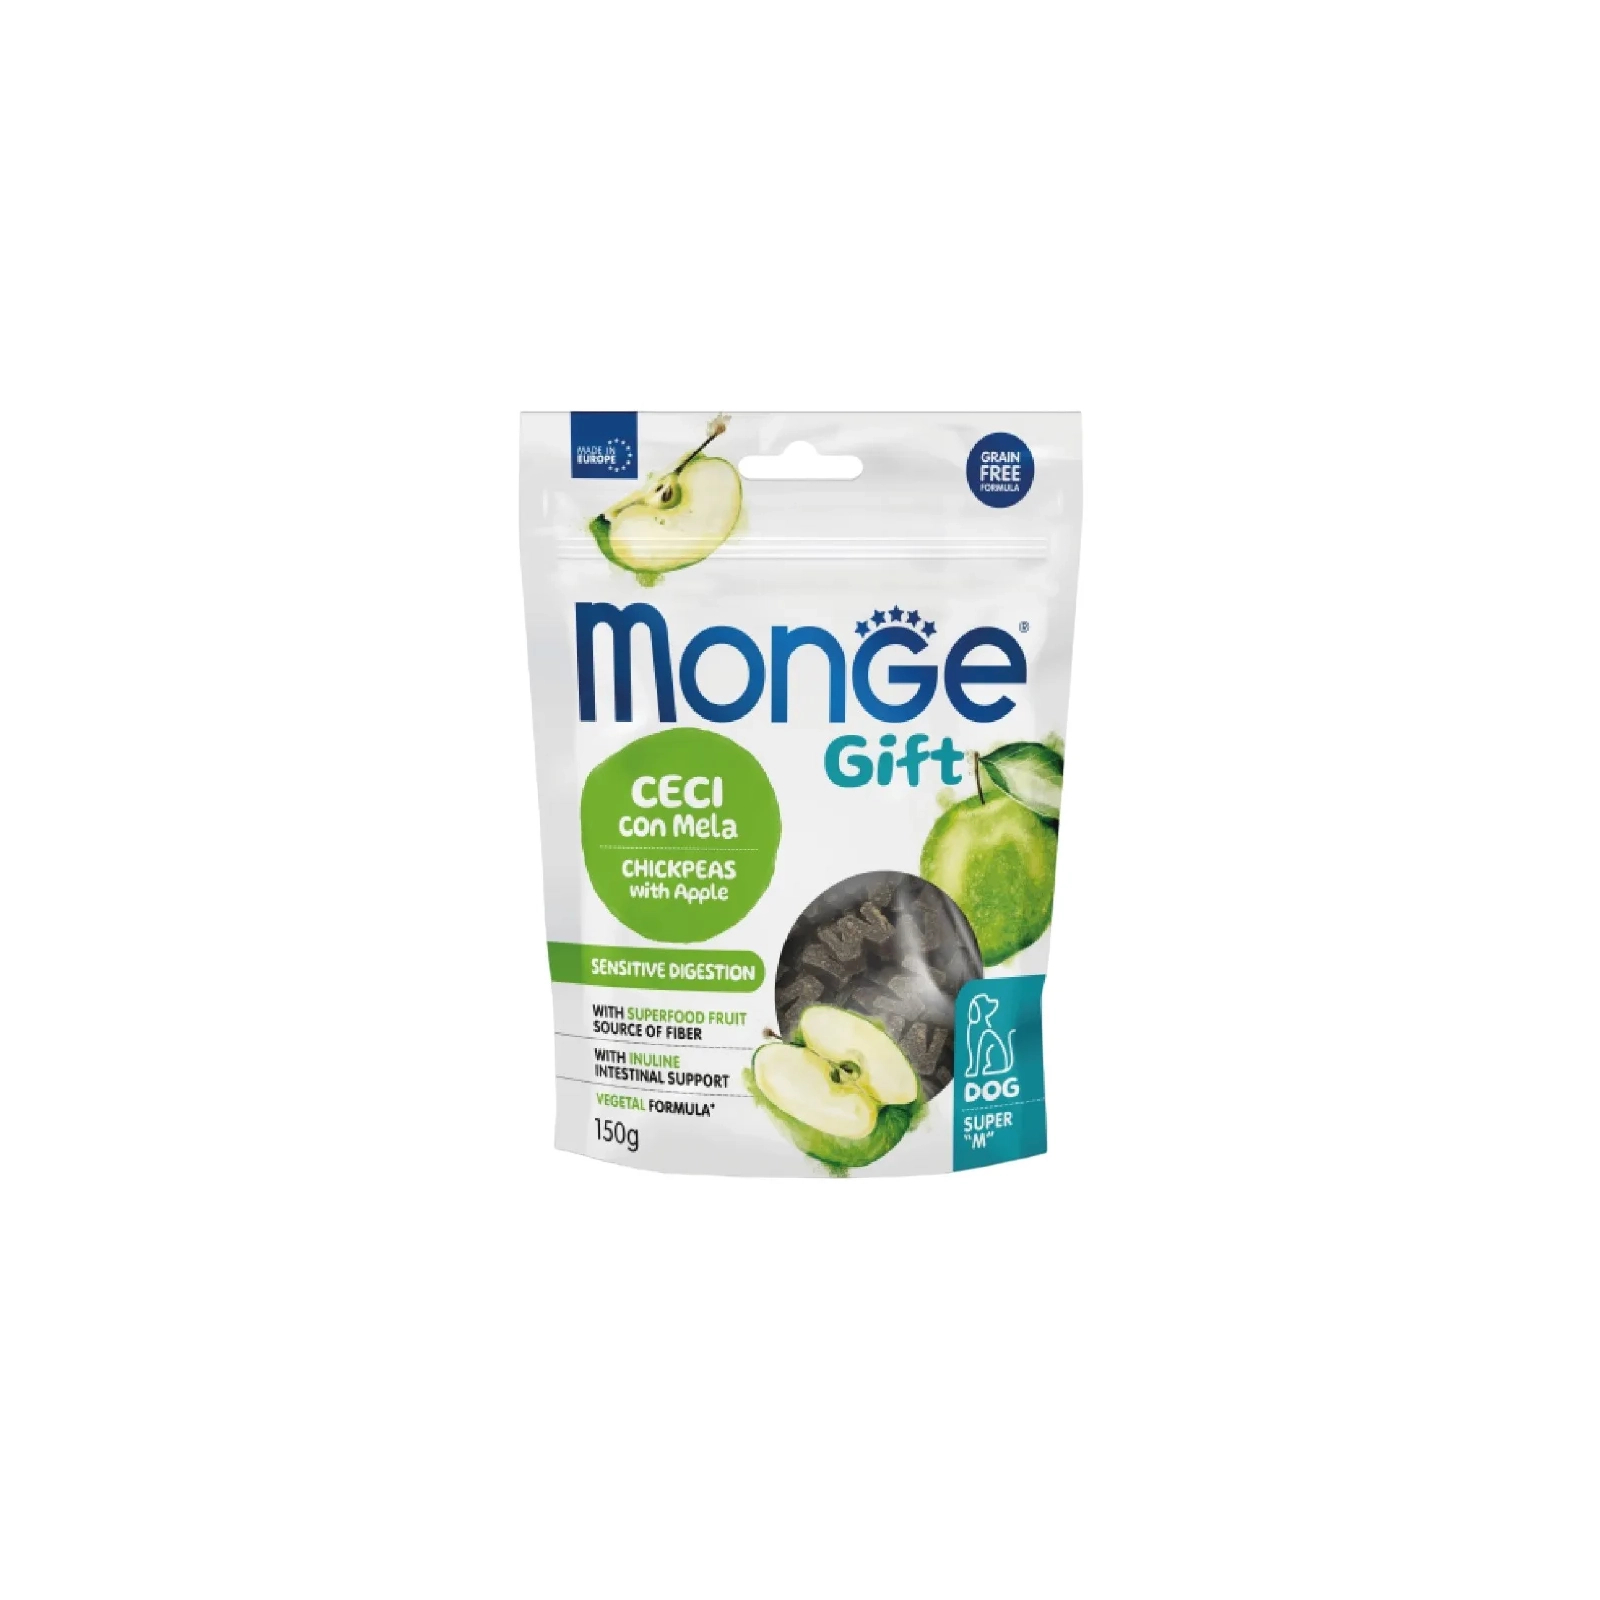 Лакомство для собак Monge Gift Dog Sensitive digestion нут с яблоком (веган) 150 г (8009470085694)